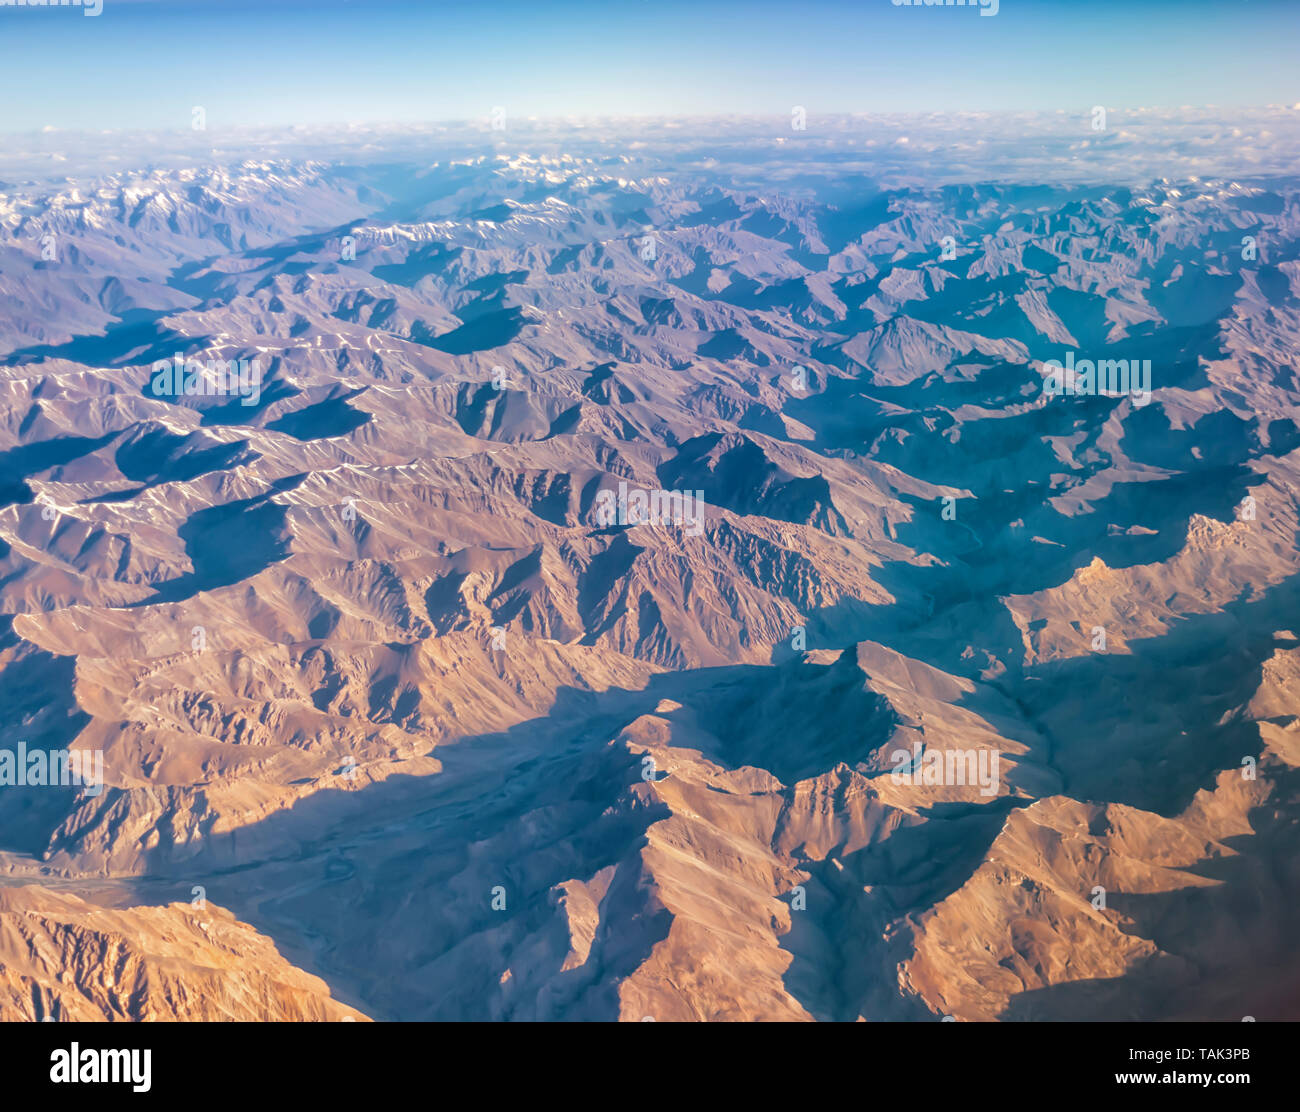 Ein Luftbild der kargen Bergwelt des Zanskar Spektrum der inneren Himalaja in Indien. Aus einem Flugzeug auf einem frühen Juli morgens genommen. Stockfoto